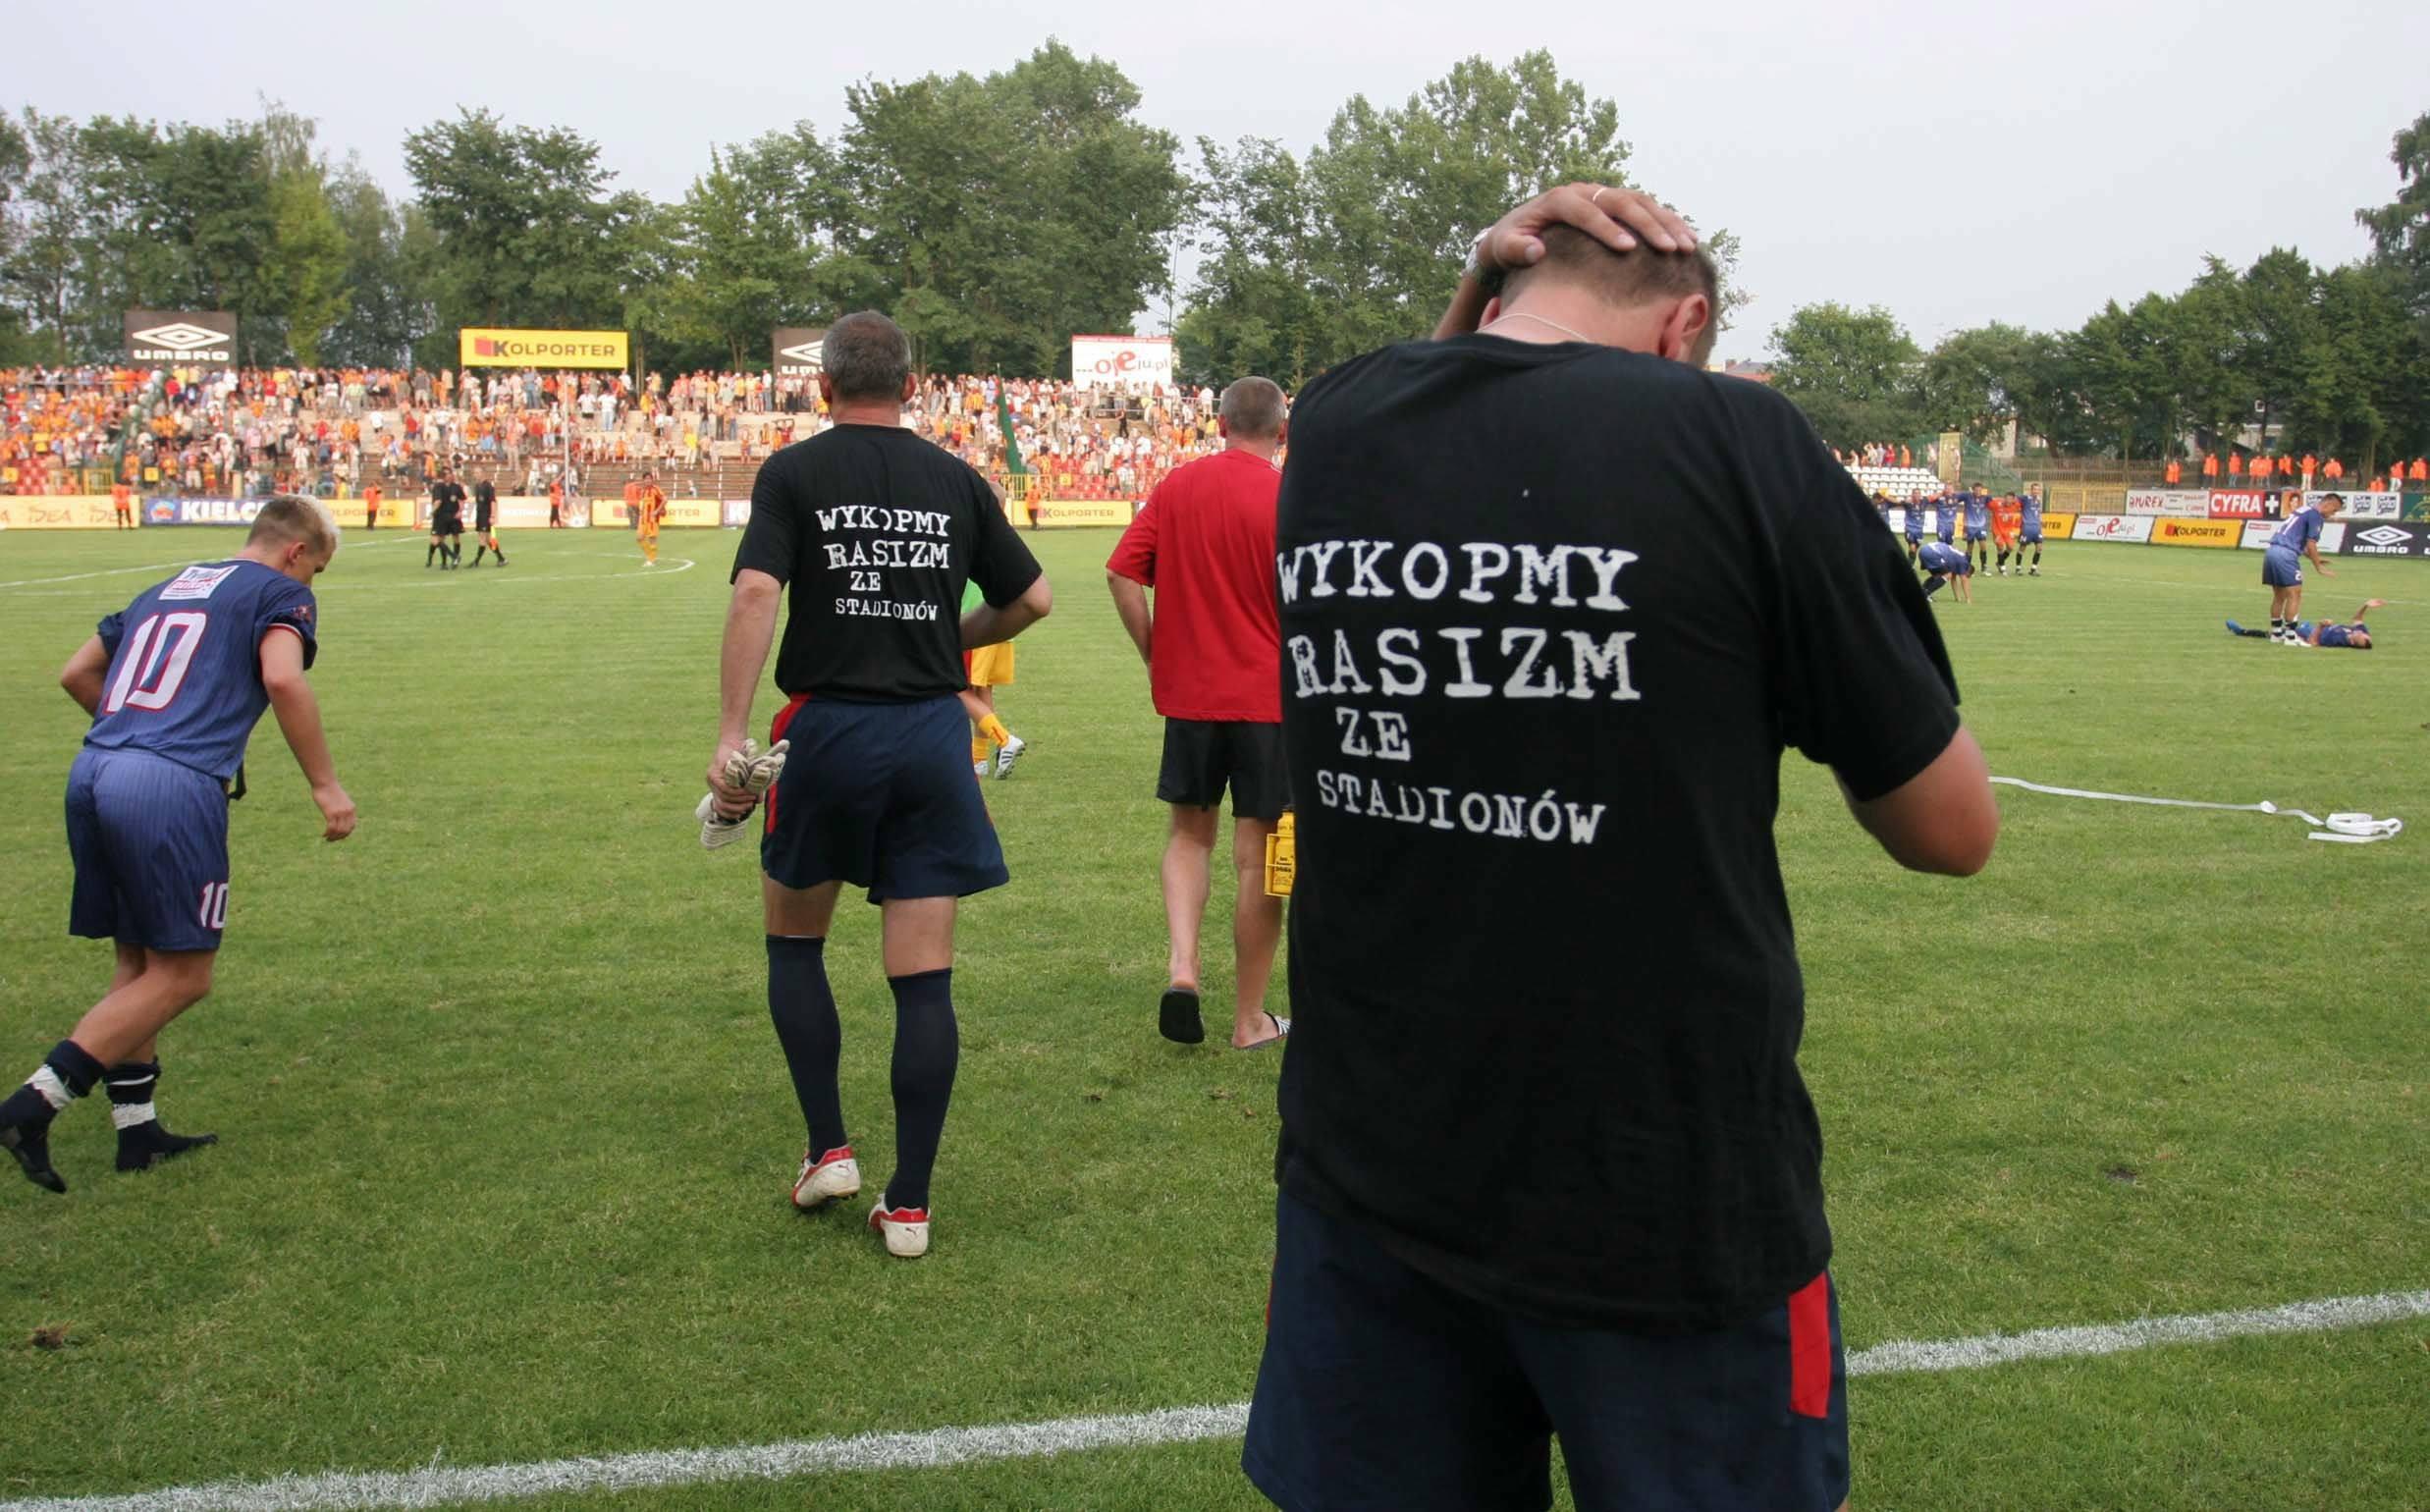 Piłkarze w koszulkach "Wykopmy rasizm ze stadionów"